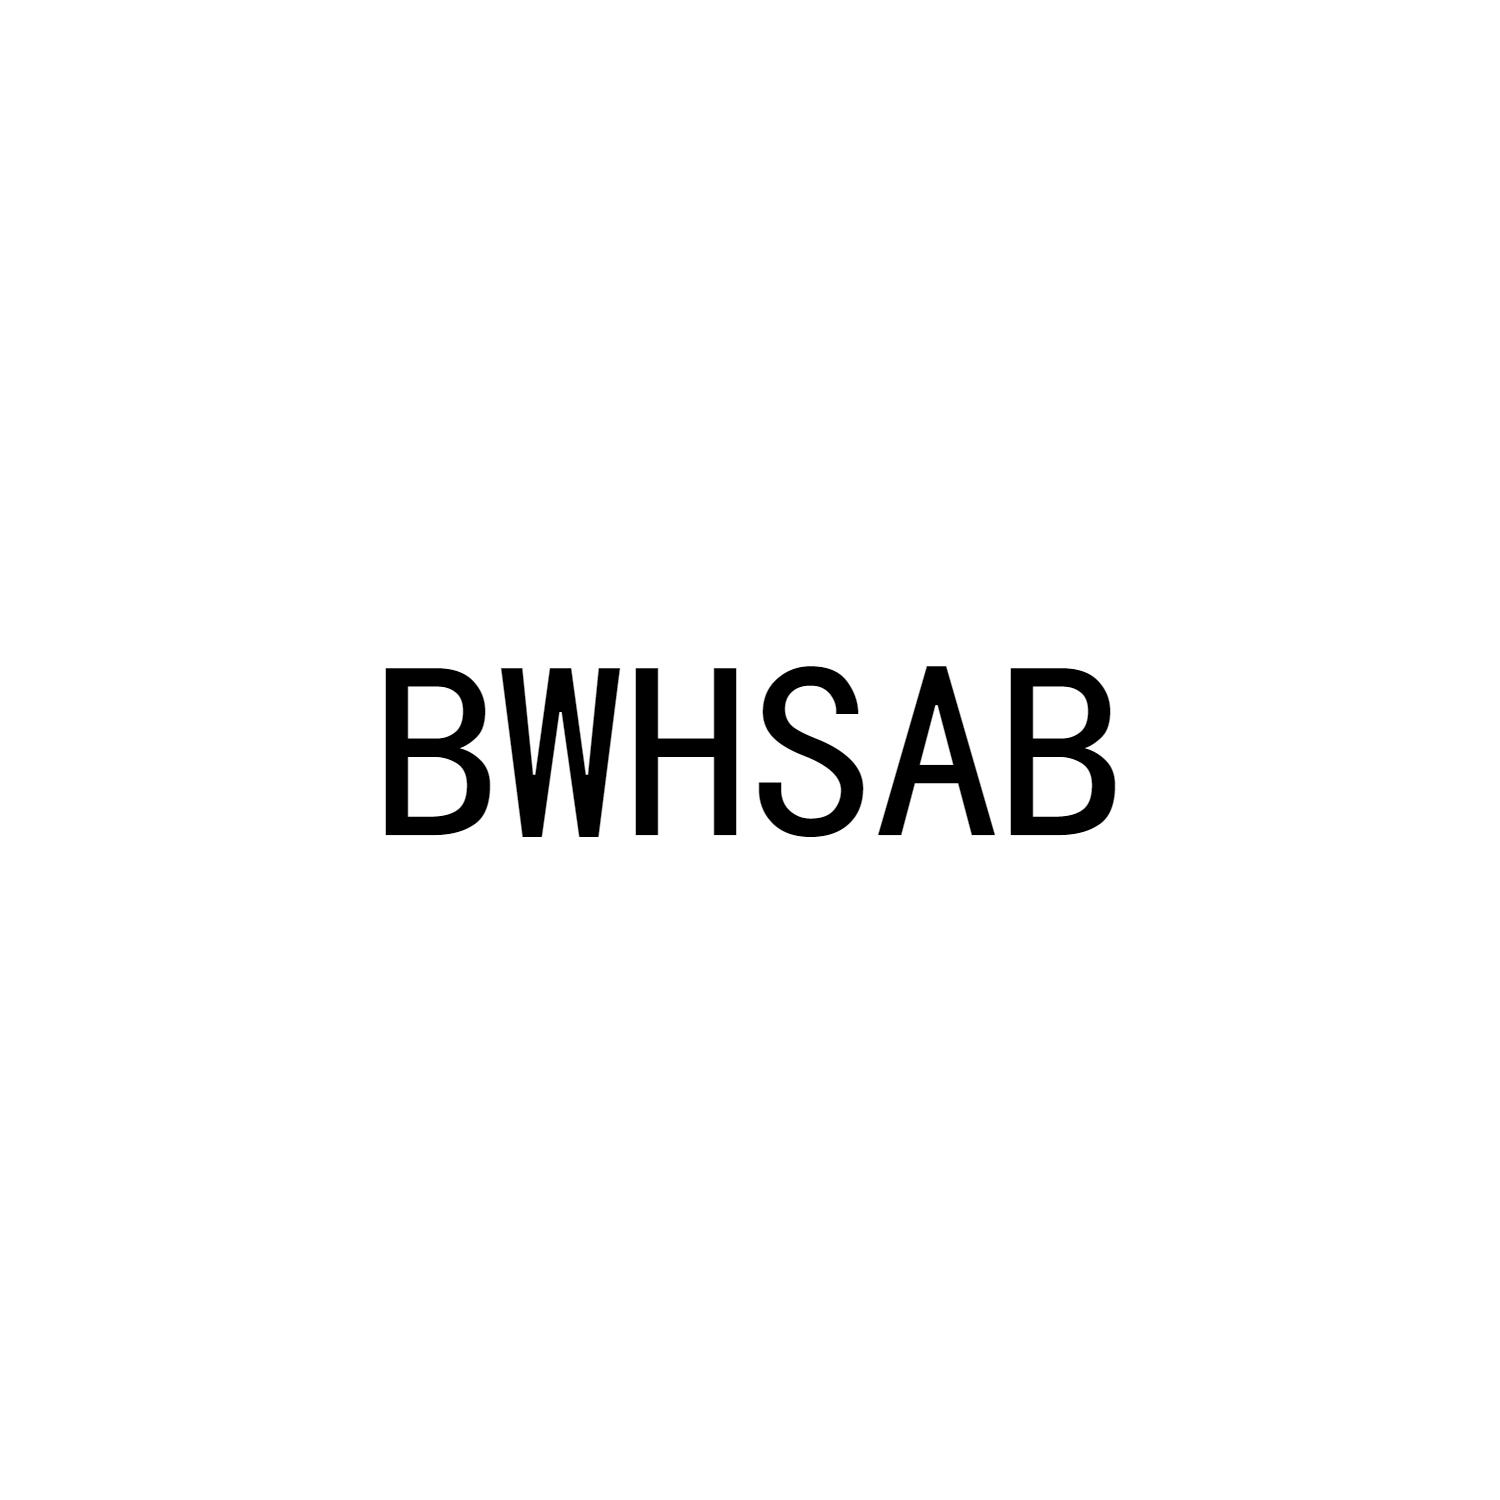 BWHSAB